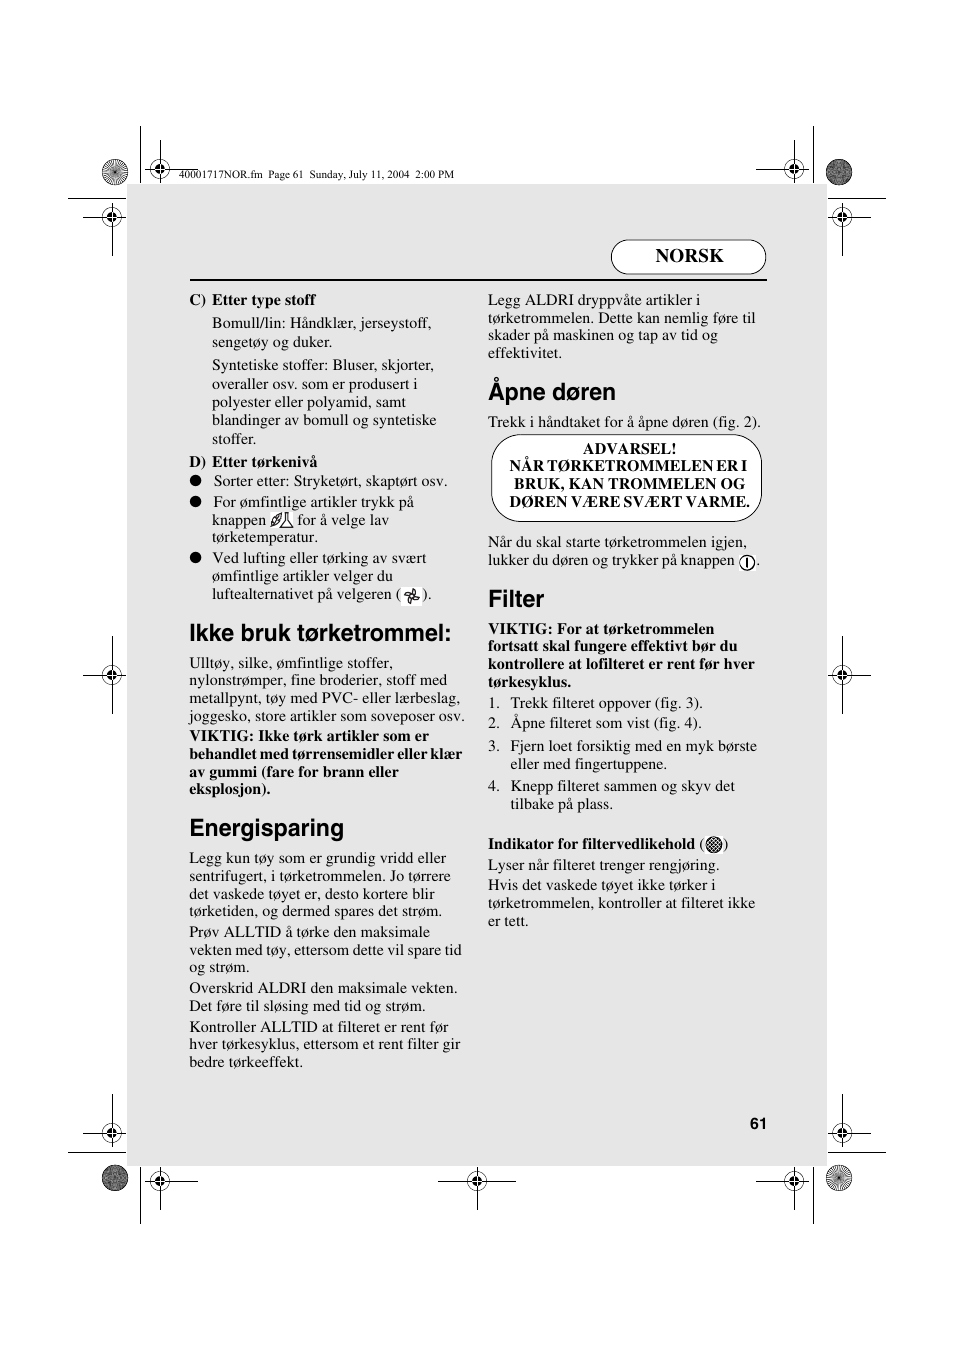 Ikke bruk tørketrommel, Energisparing, Åpne døren | Candy AB CDC 168 - SY  User Manual | Page 61 / 104 | Original mode